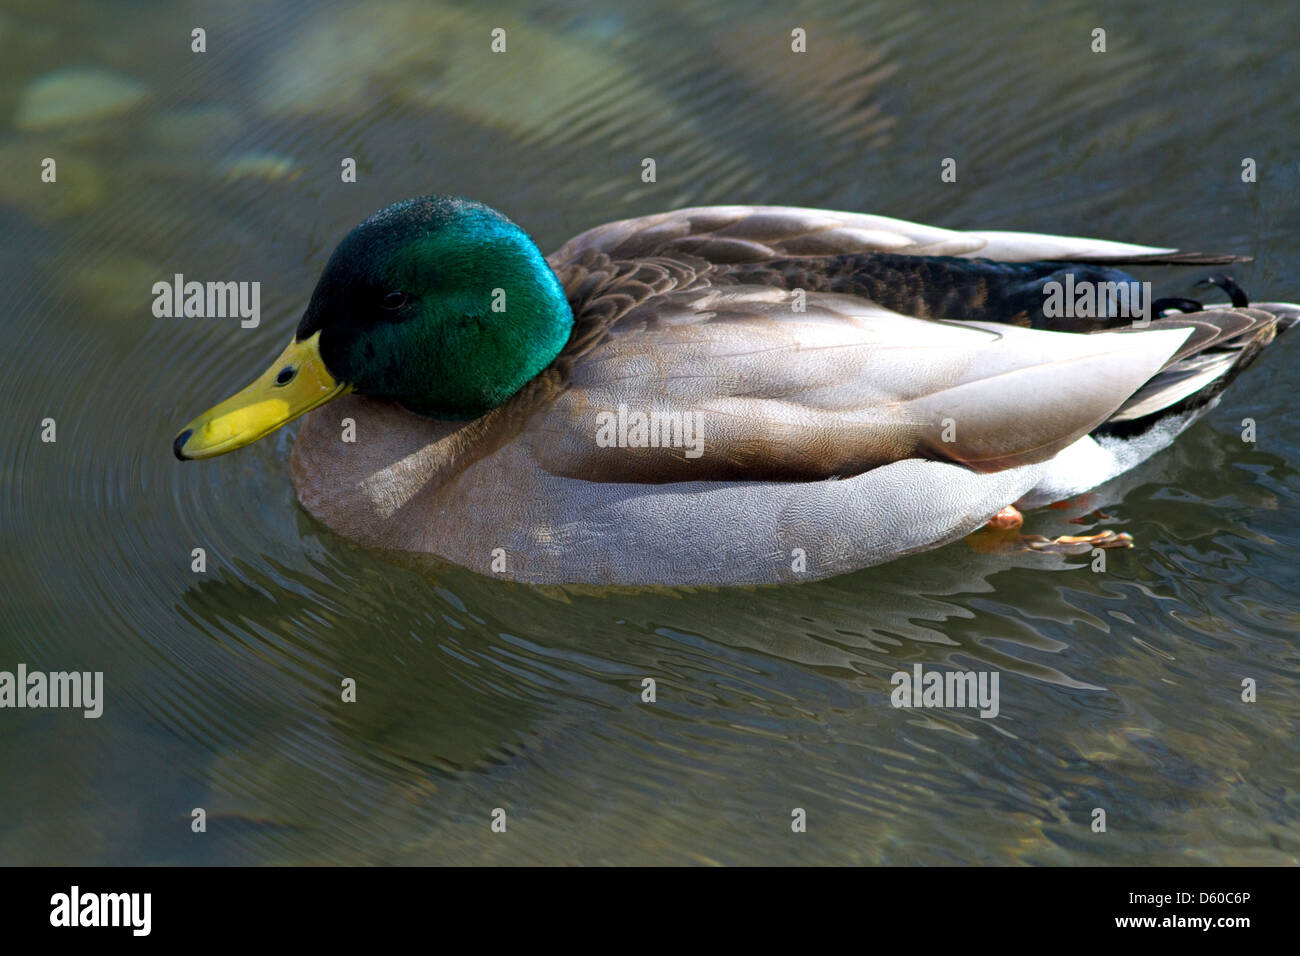 Mallard duck in Boise, Idaho, USA. Stock Photo